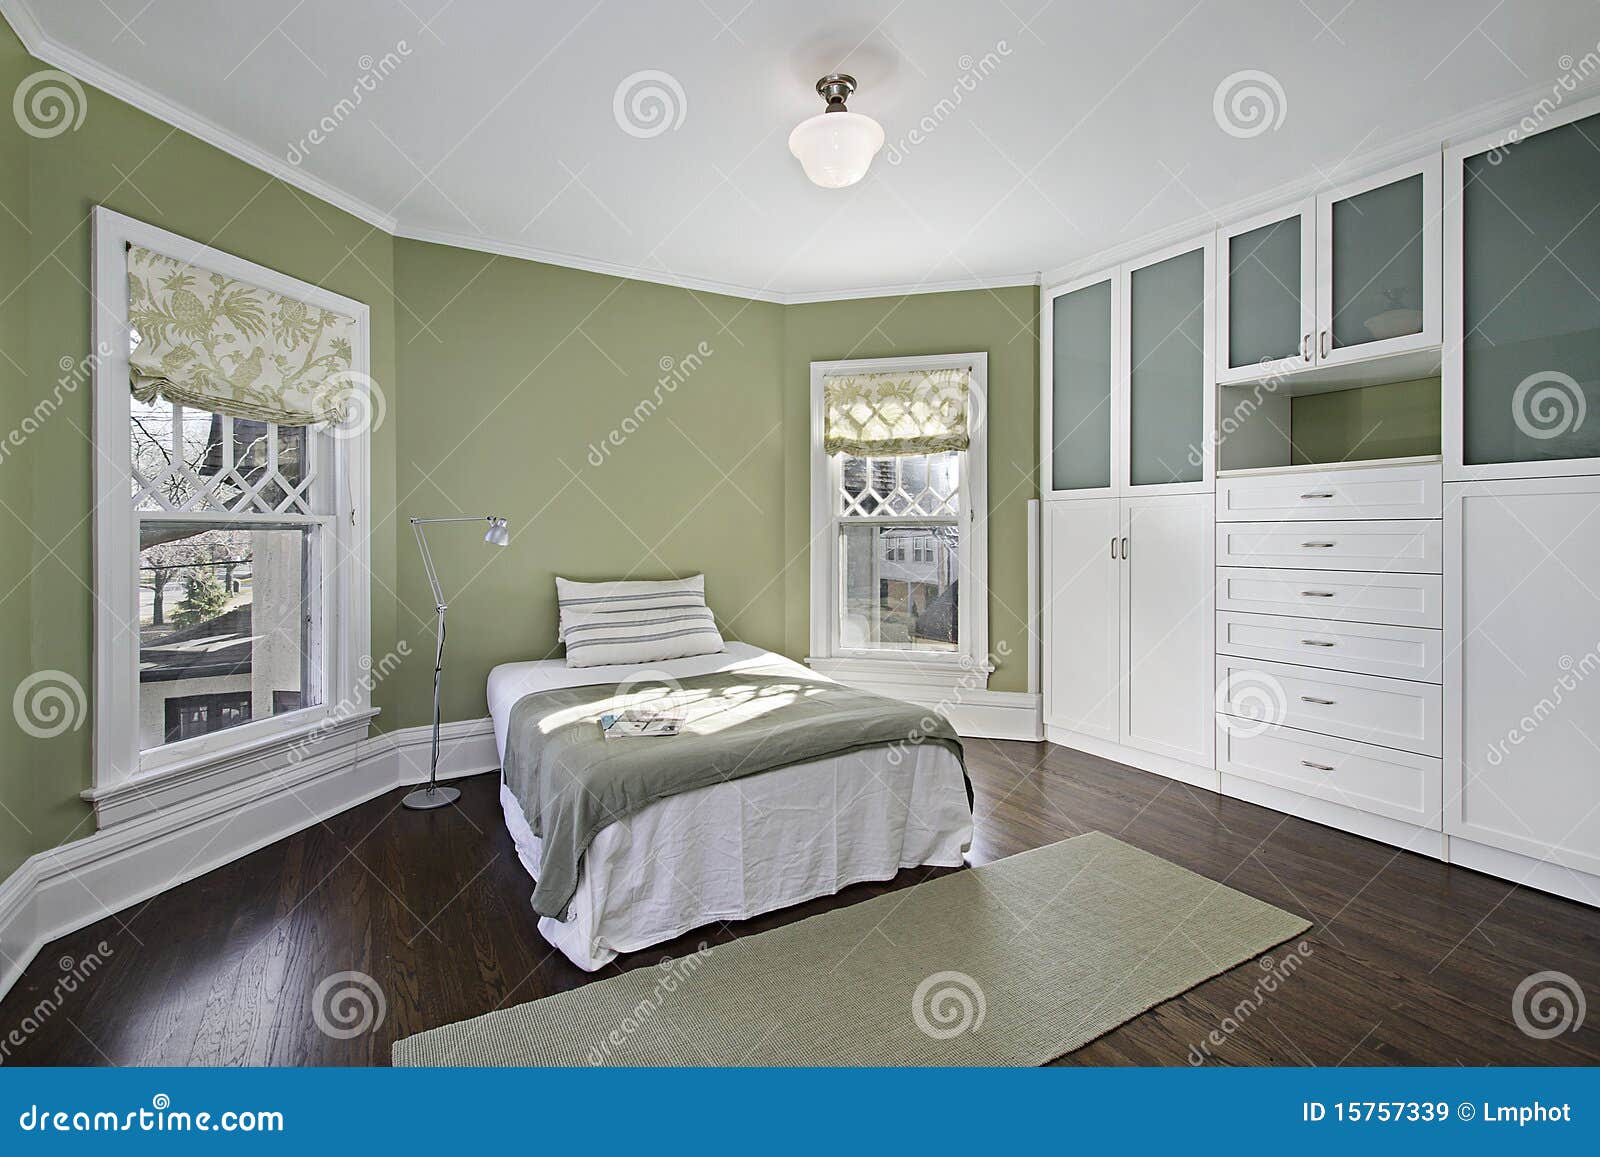 Dormitorio Principal Con Las Paredes Verdes Imagen de archivo - Imagen